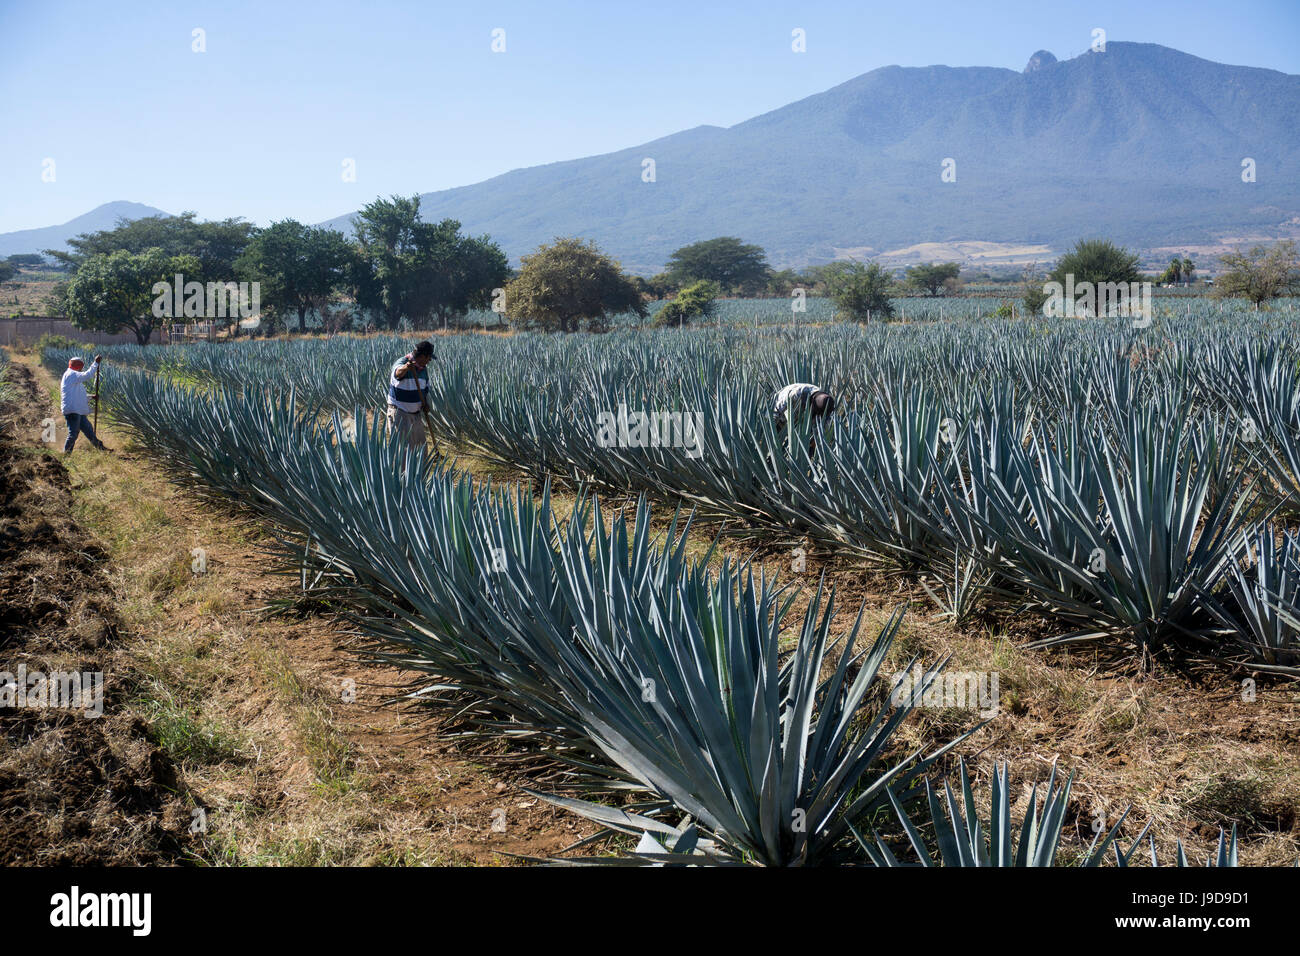 El tequila es hecho de la planta de agave azul en el estado de Jalisco y principalmente en los alrededores de la ciudad de Tequila, Jalisco, México Foto de stock